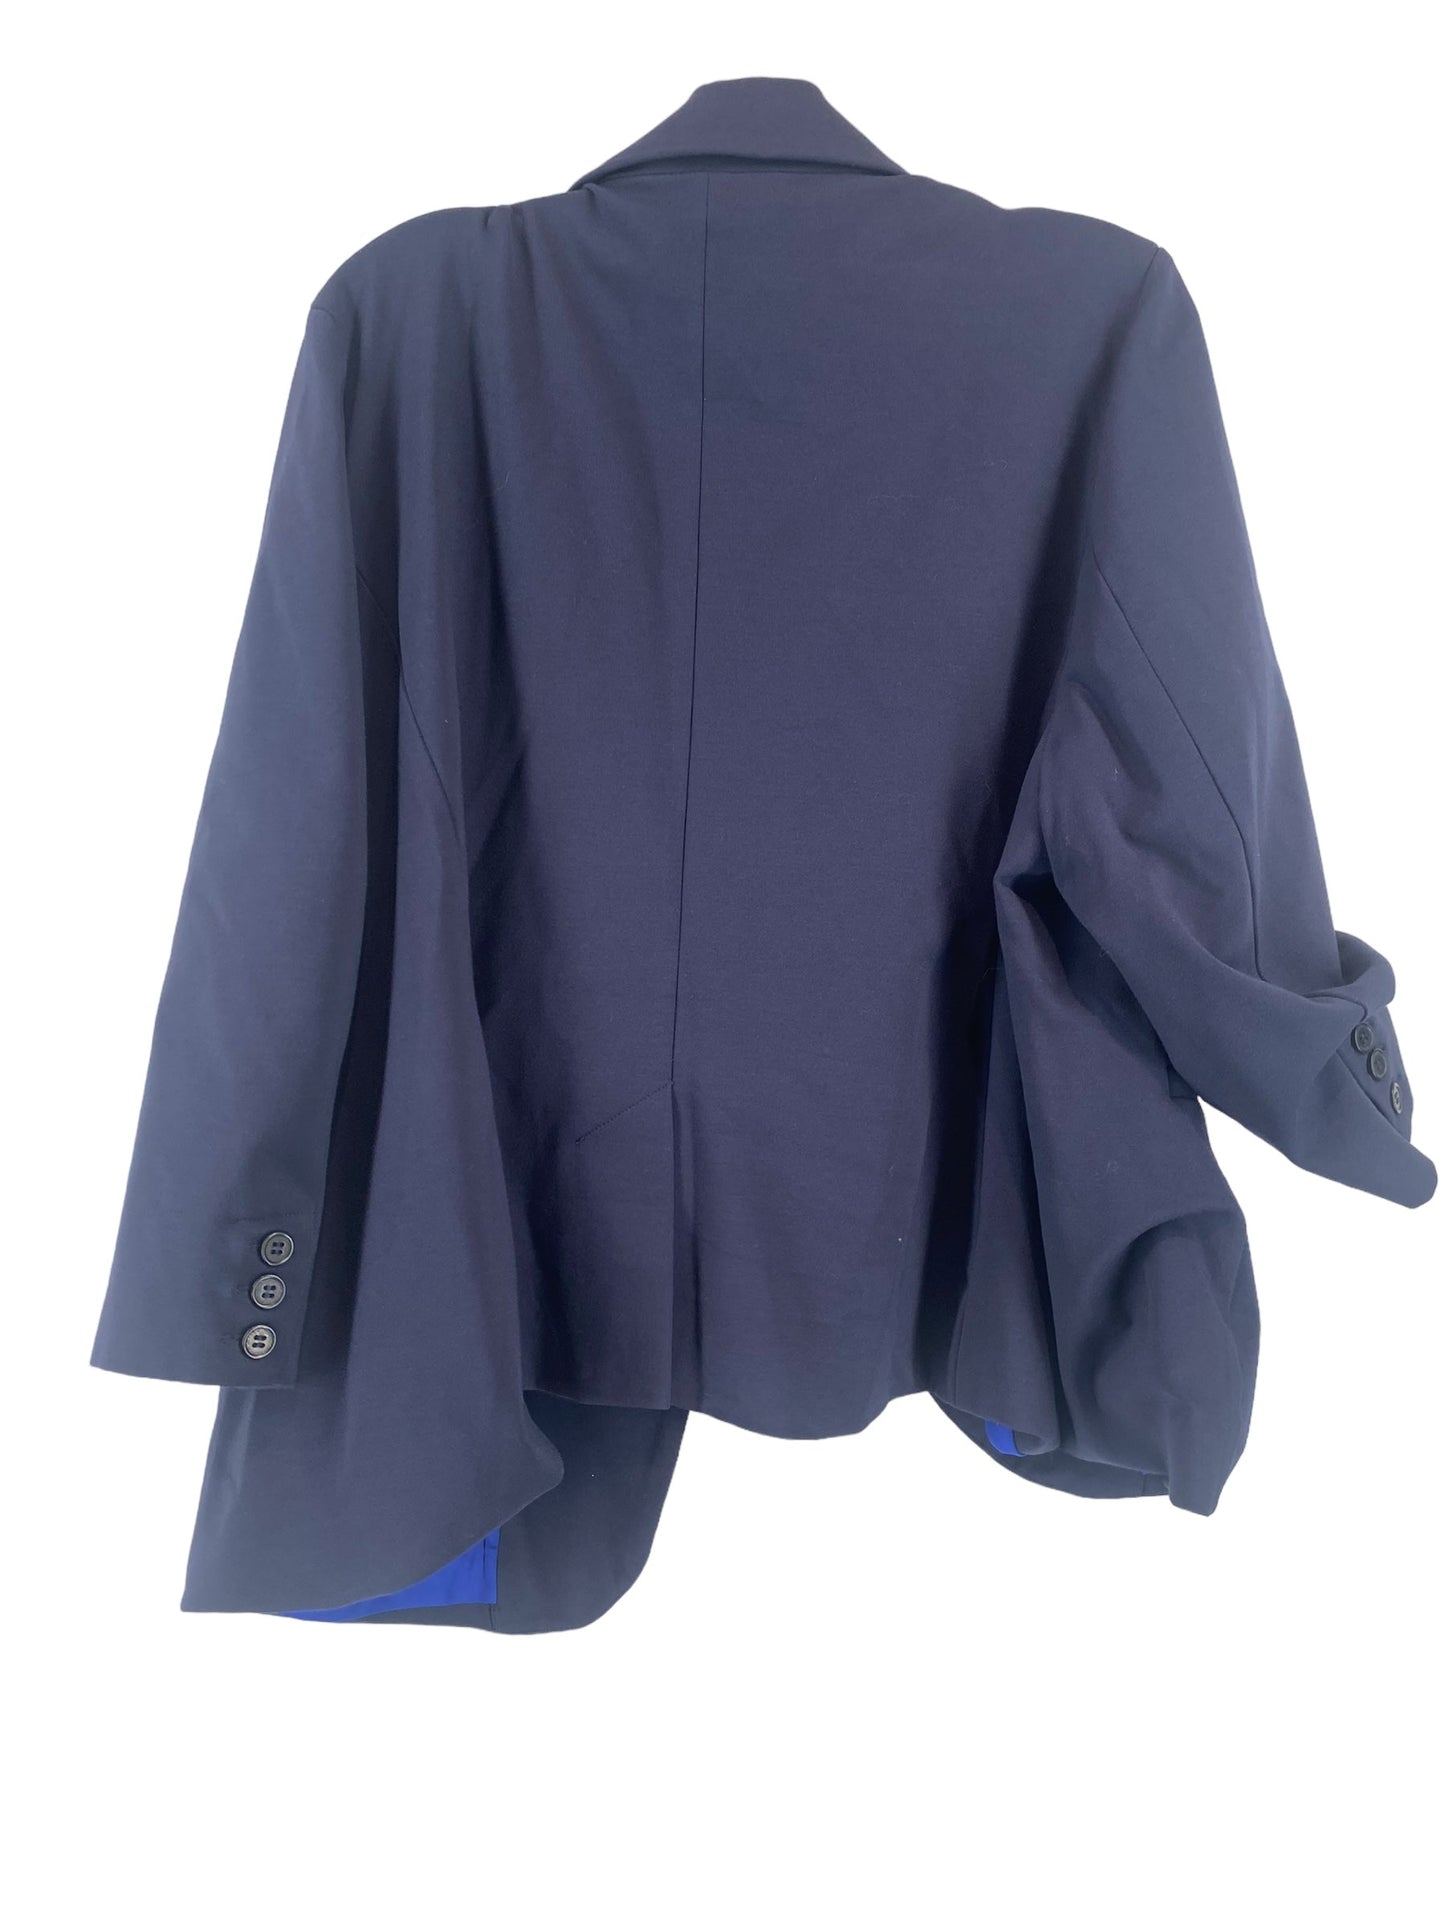 Navy Blazer Modcloth, Size 2x